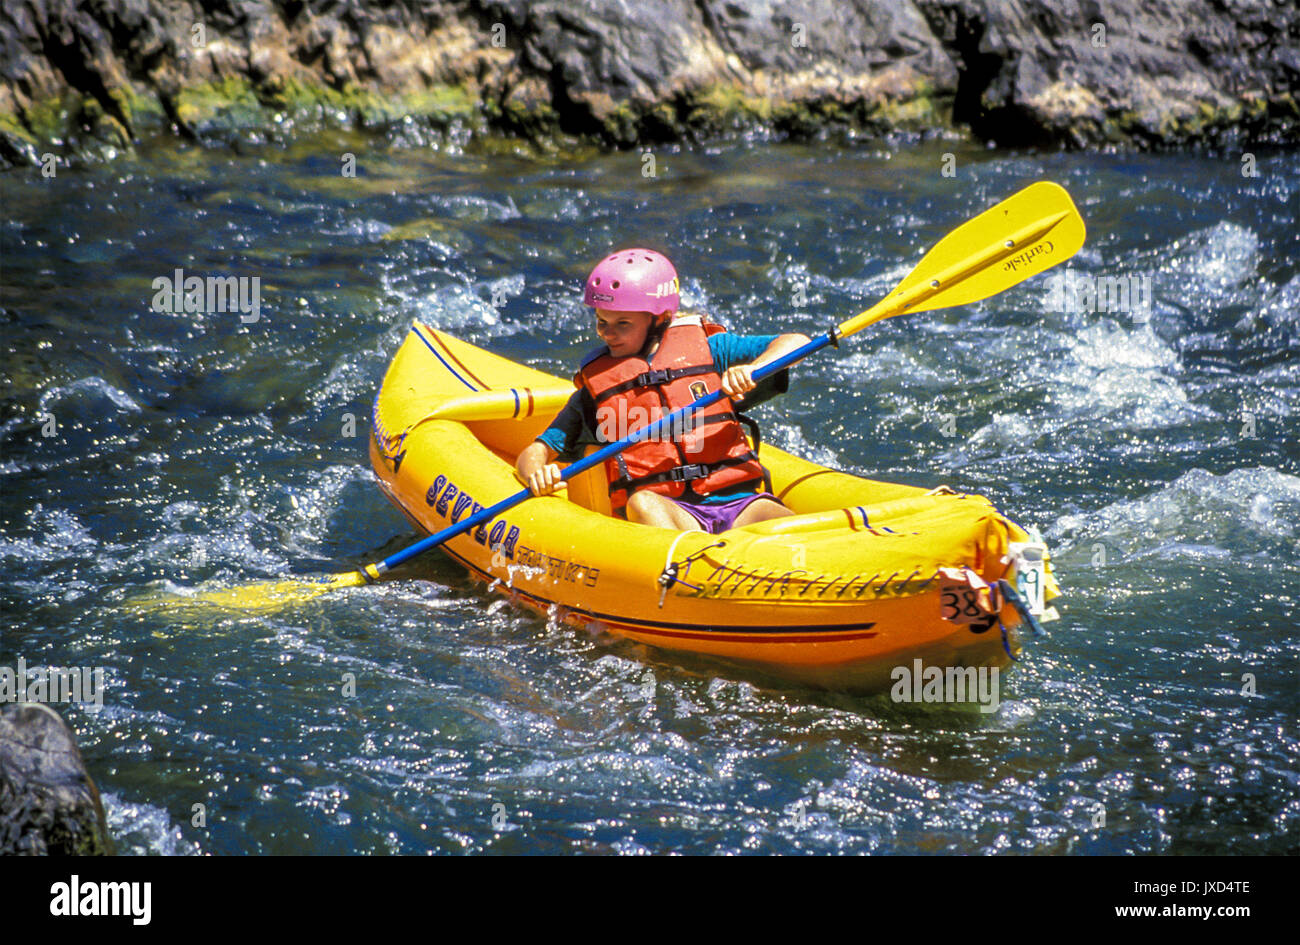 Kindheit junge Person Kind 9-12 Jahre whitewater rafting Stromschnellen Rogue River, Oregon paddeln physische Stärke Übung © Myrleen Pearson Stockfoto